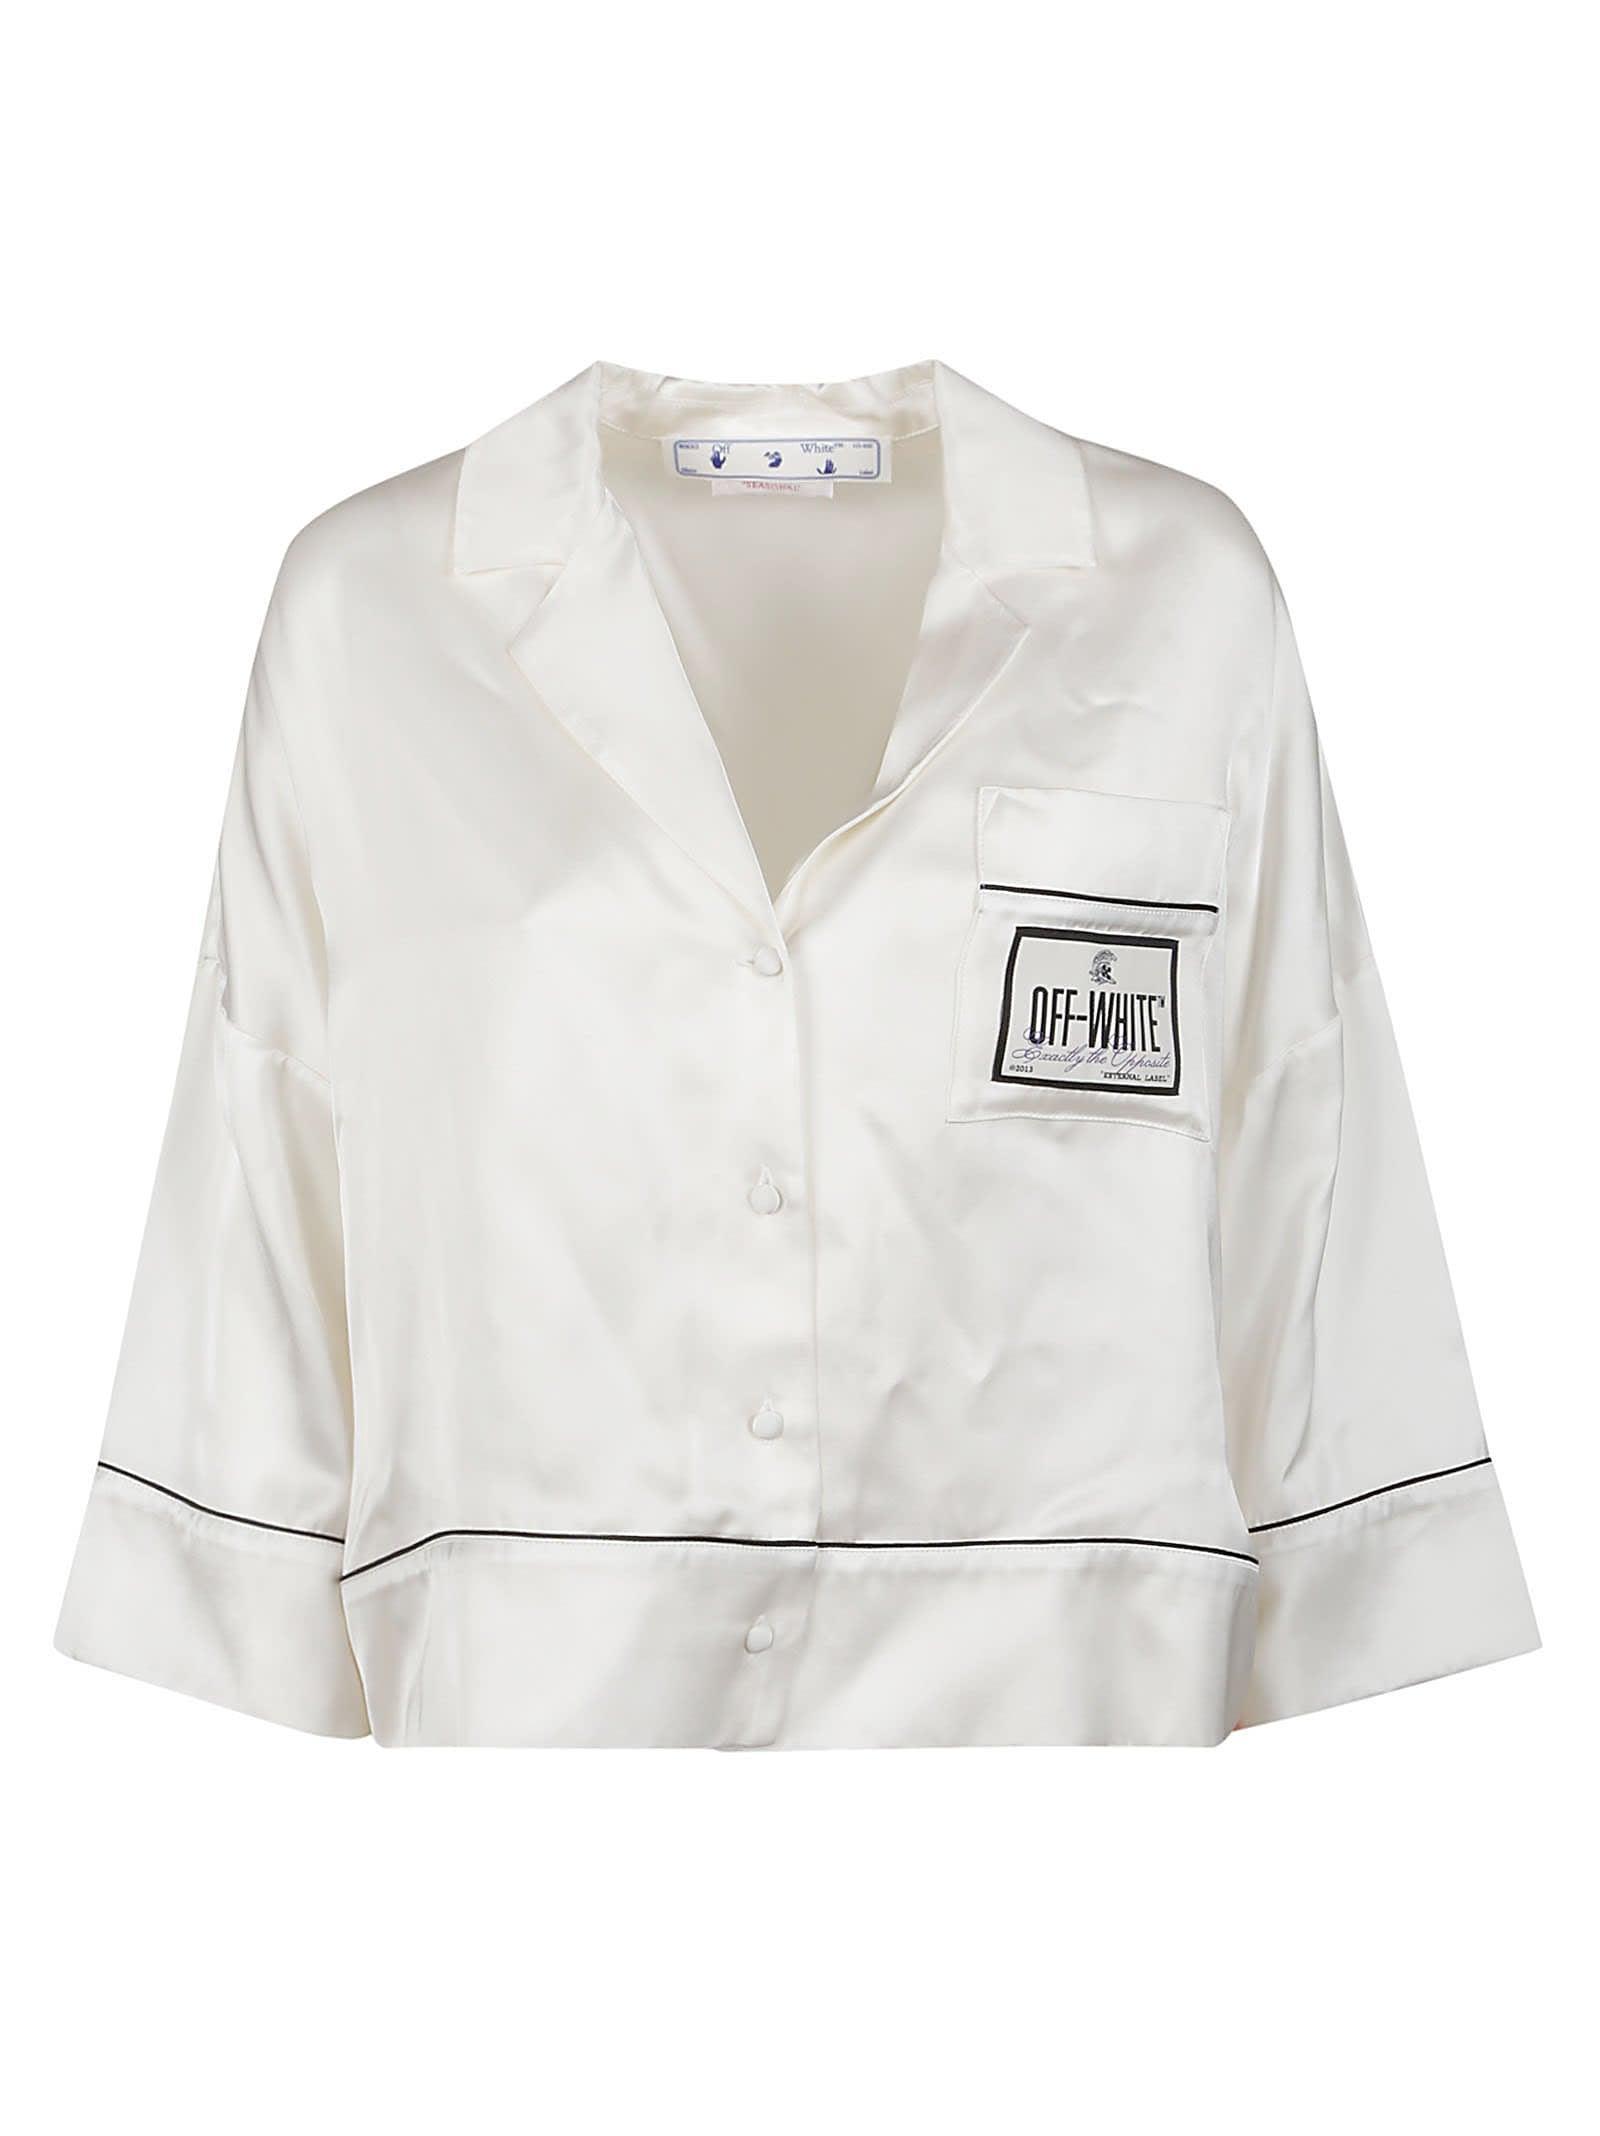 Off-White c/o Virgil Abloh Sky Jacquard Satin Pajama Shirt in